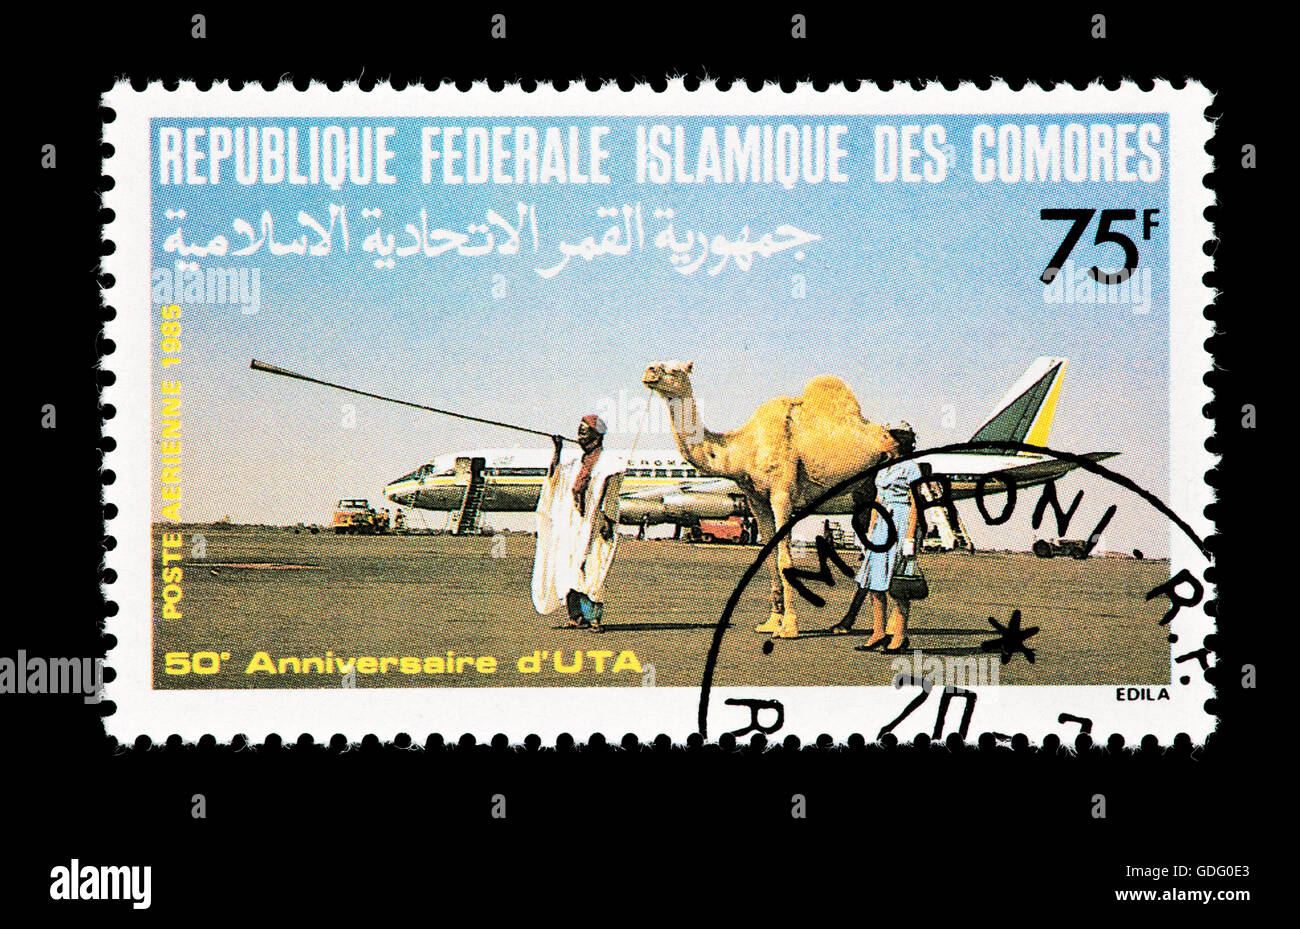 Francobollo dalle Isole Comoro raffigurante un cammello conducente e un DC-8 aereo. Foto Stock